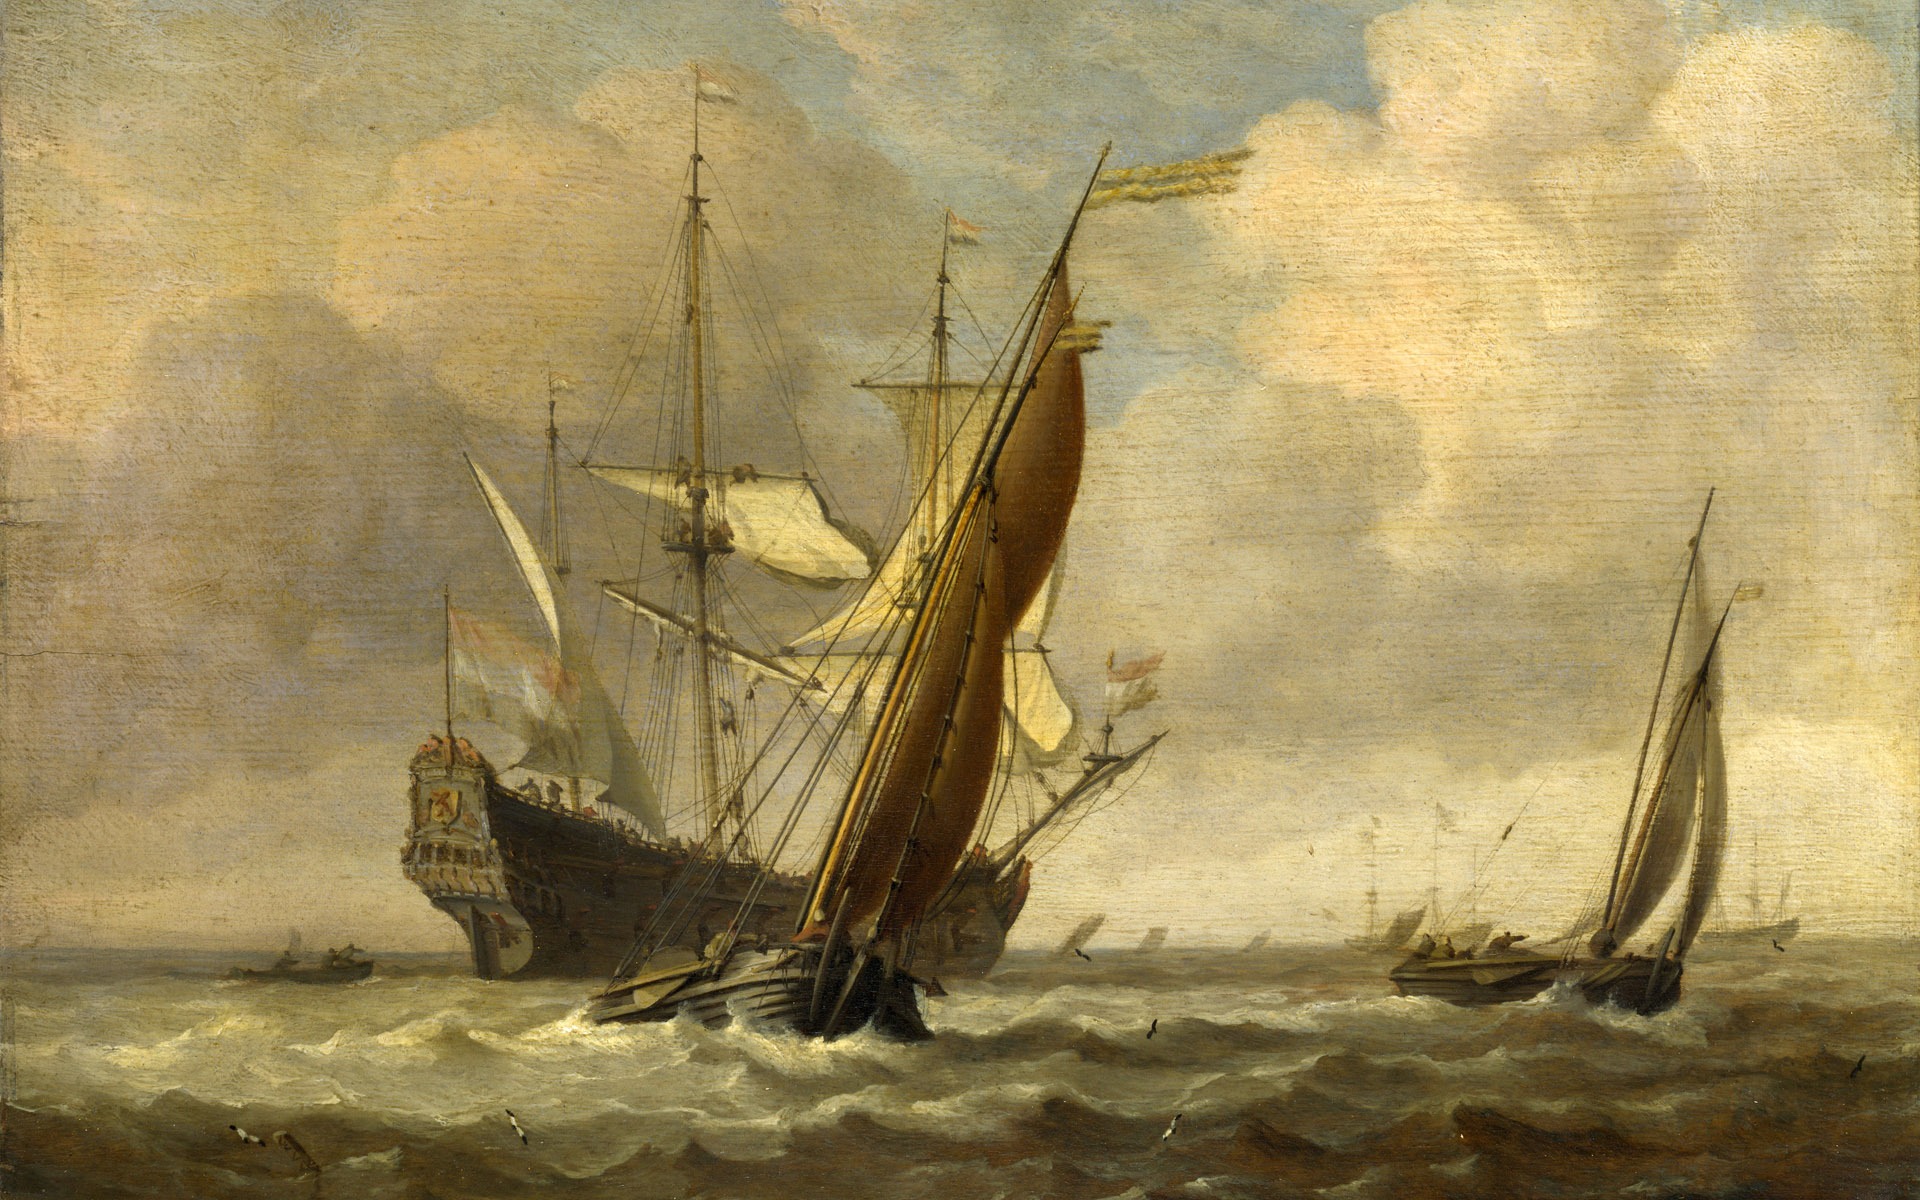 伦敦画廊帆船 壁纸(二)19 - 1920x1200